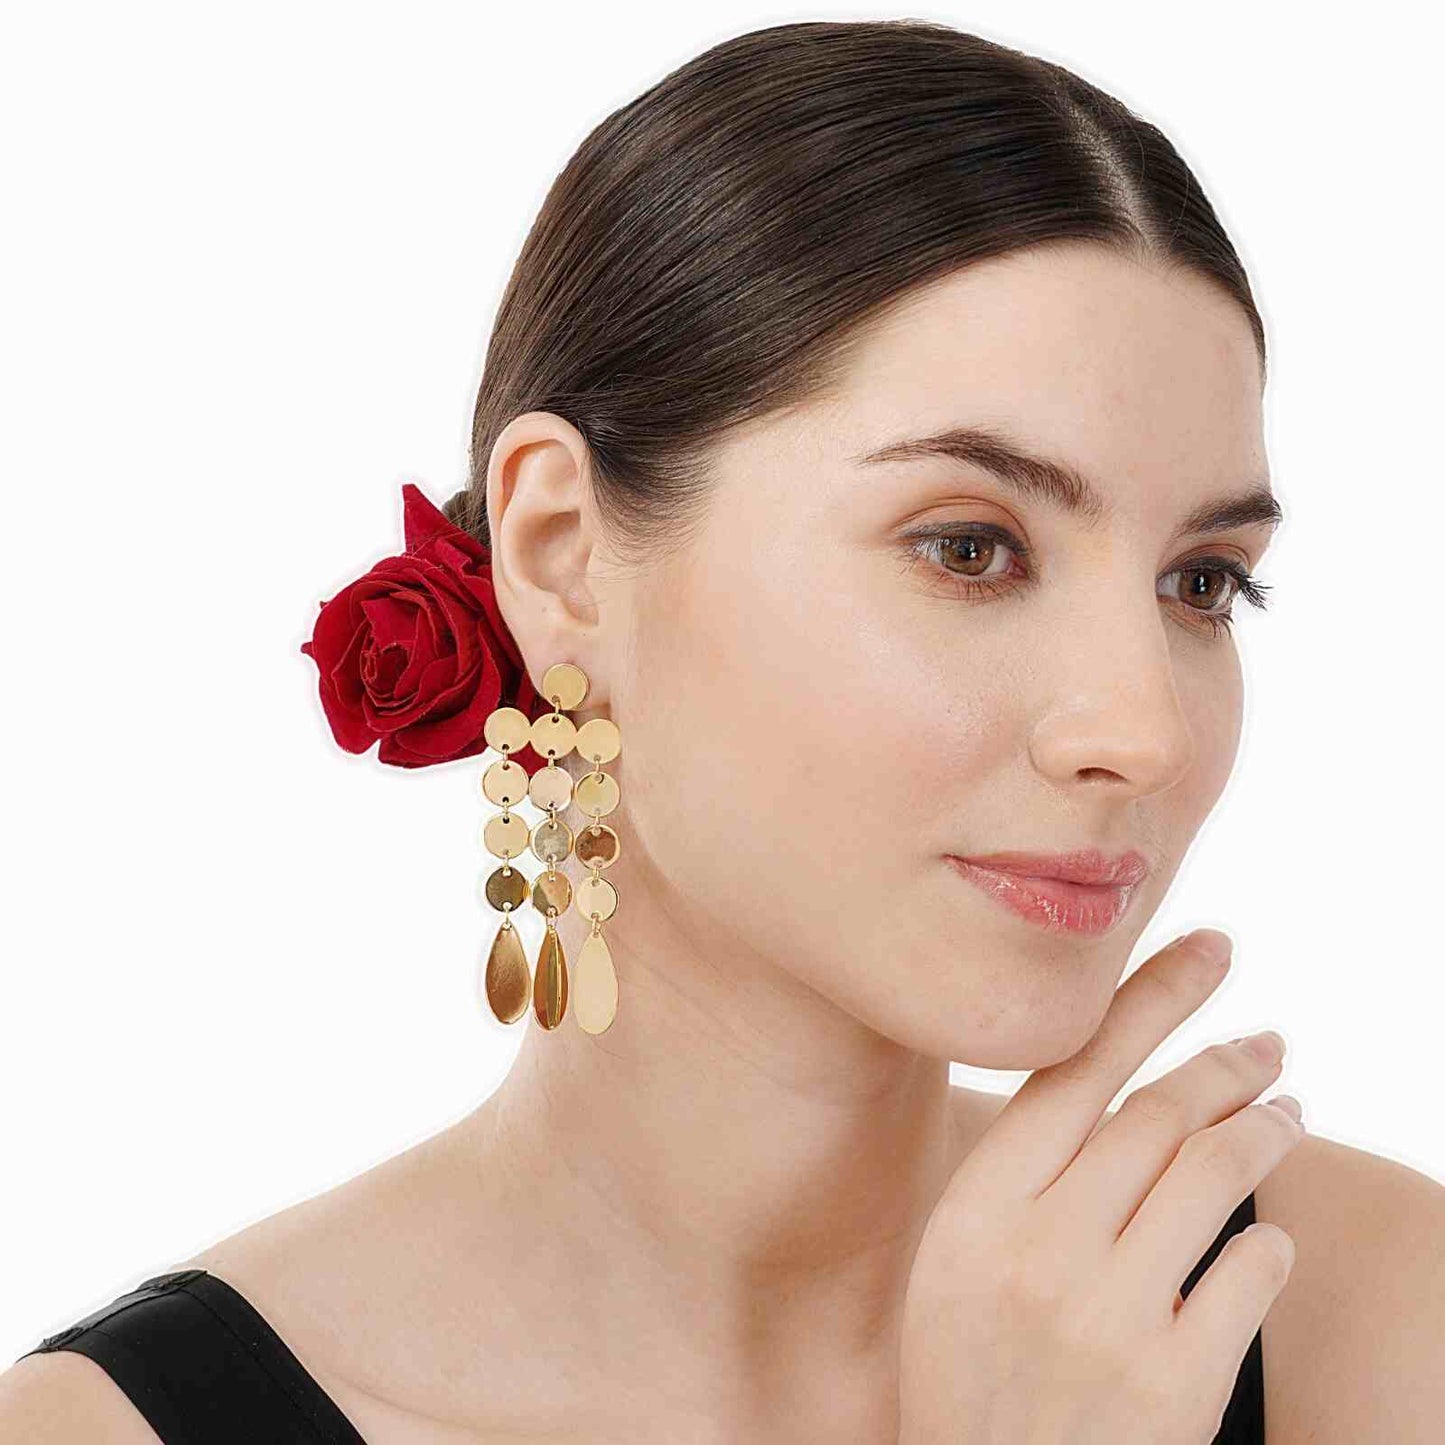 Latkan Wale Earrings | Gold Plated Fall Earrings | Fashion Jewellery